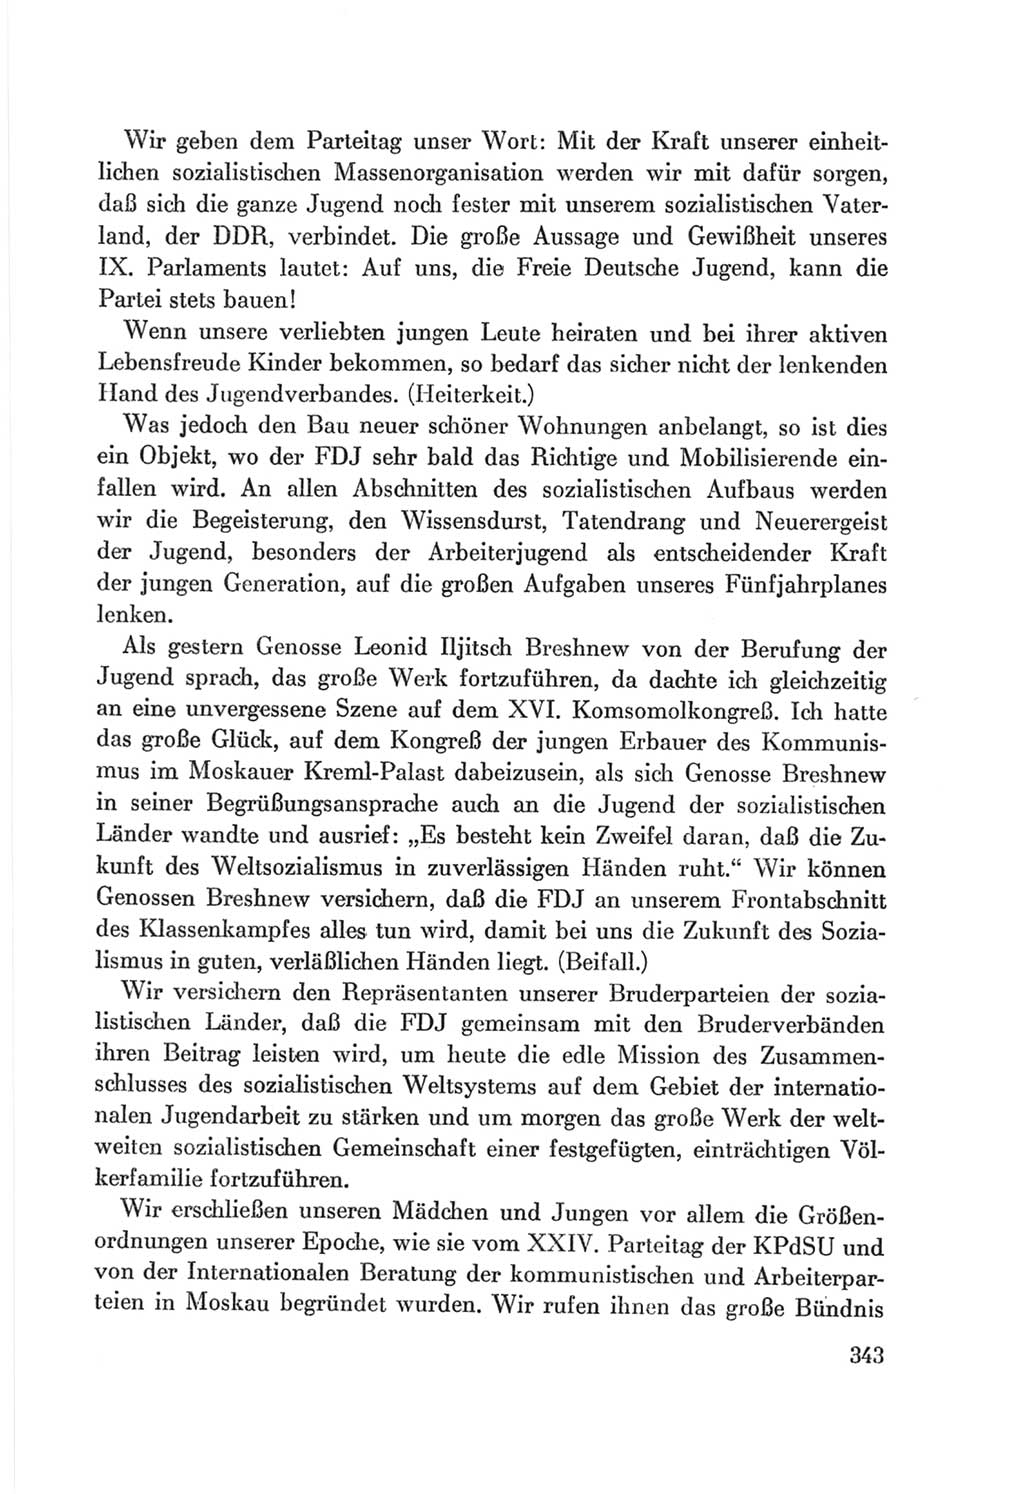 Protokoll der Verhandlungen des Ⅷ. Parteitages der Sozialistischen Einheitspartei Deutschlands (SED) [Deutsche Demokratische Republik (DDR)] 1971, Band 1, Seite 343 (Prot. Verh. Ⅷ. PT SED DDR 1971, Bd. 1, S. 343)